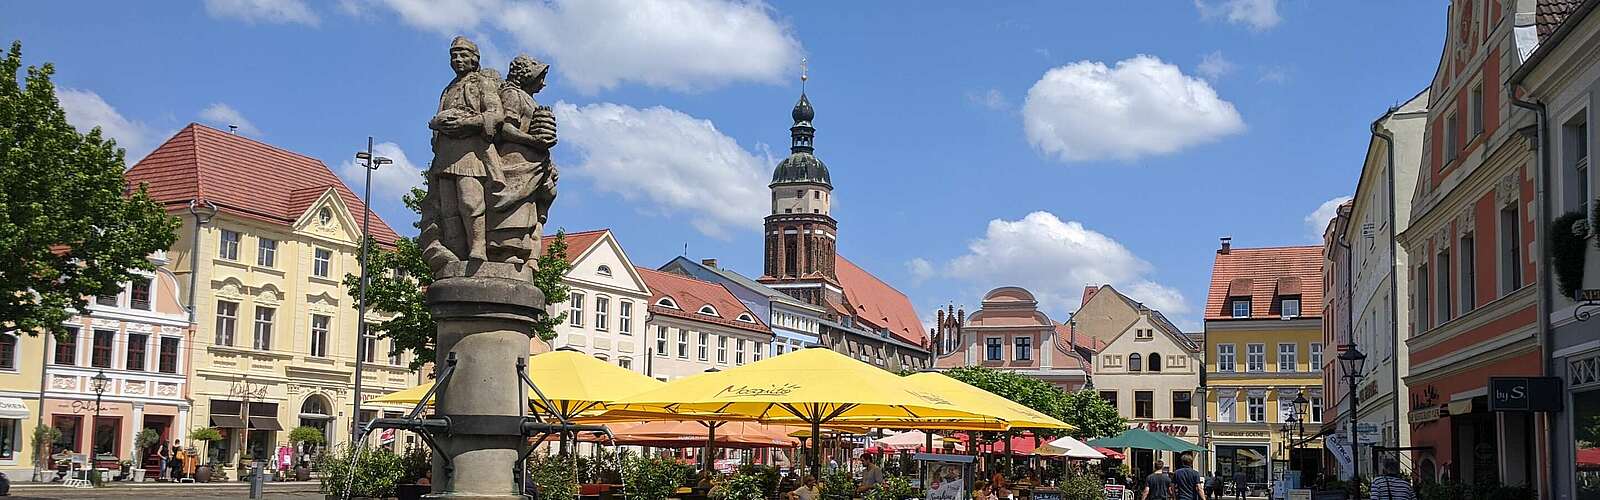 Altmarkt und Marktbrunnen in Cottbus,
        
    

        Foto: TMB Fotoarchiv/Stephanie Panne